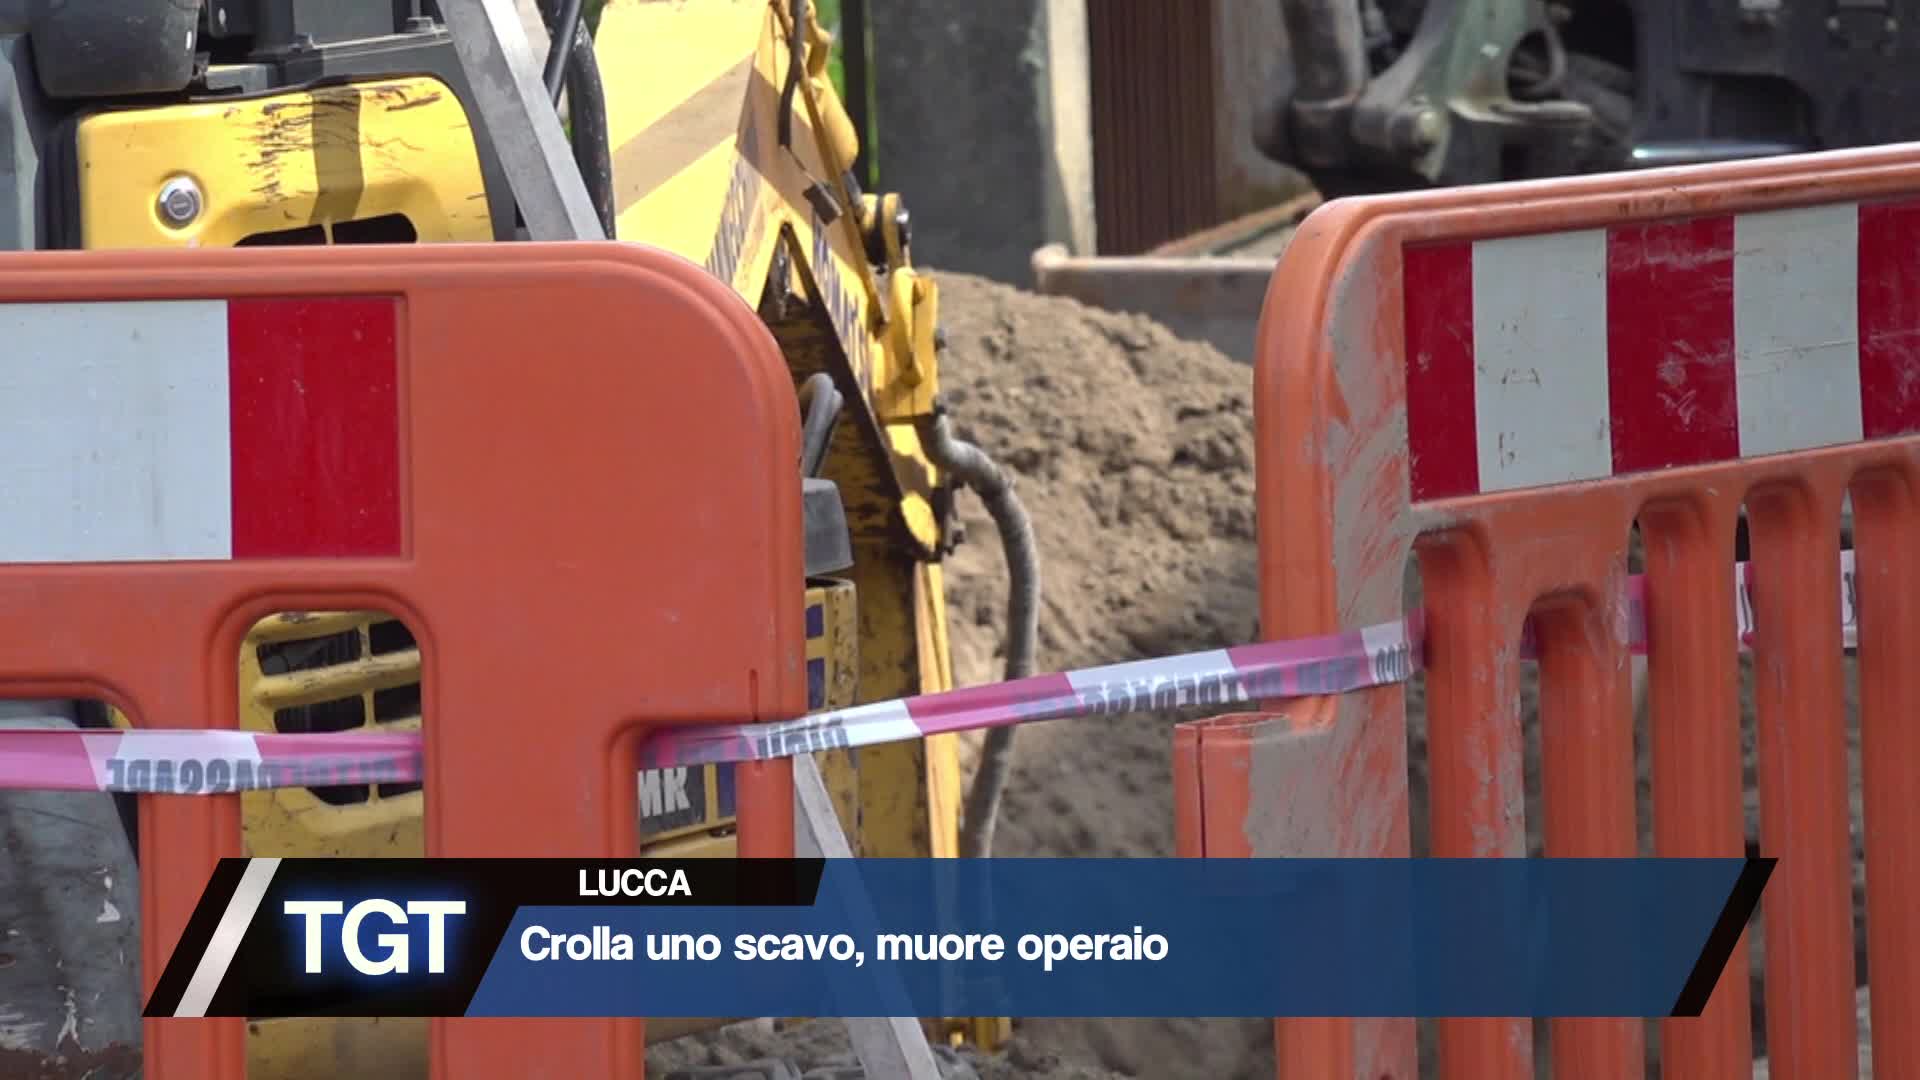 Lucca - Crollo allo scavo, muore operaio Thumbnail